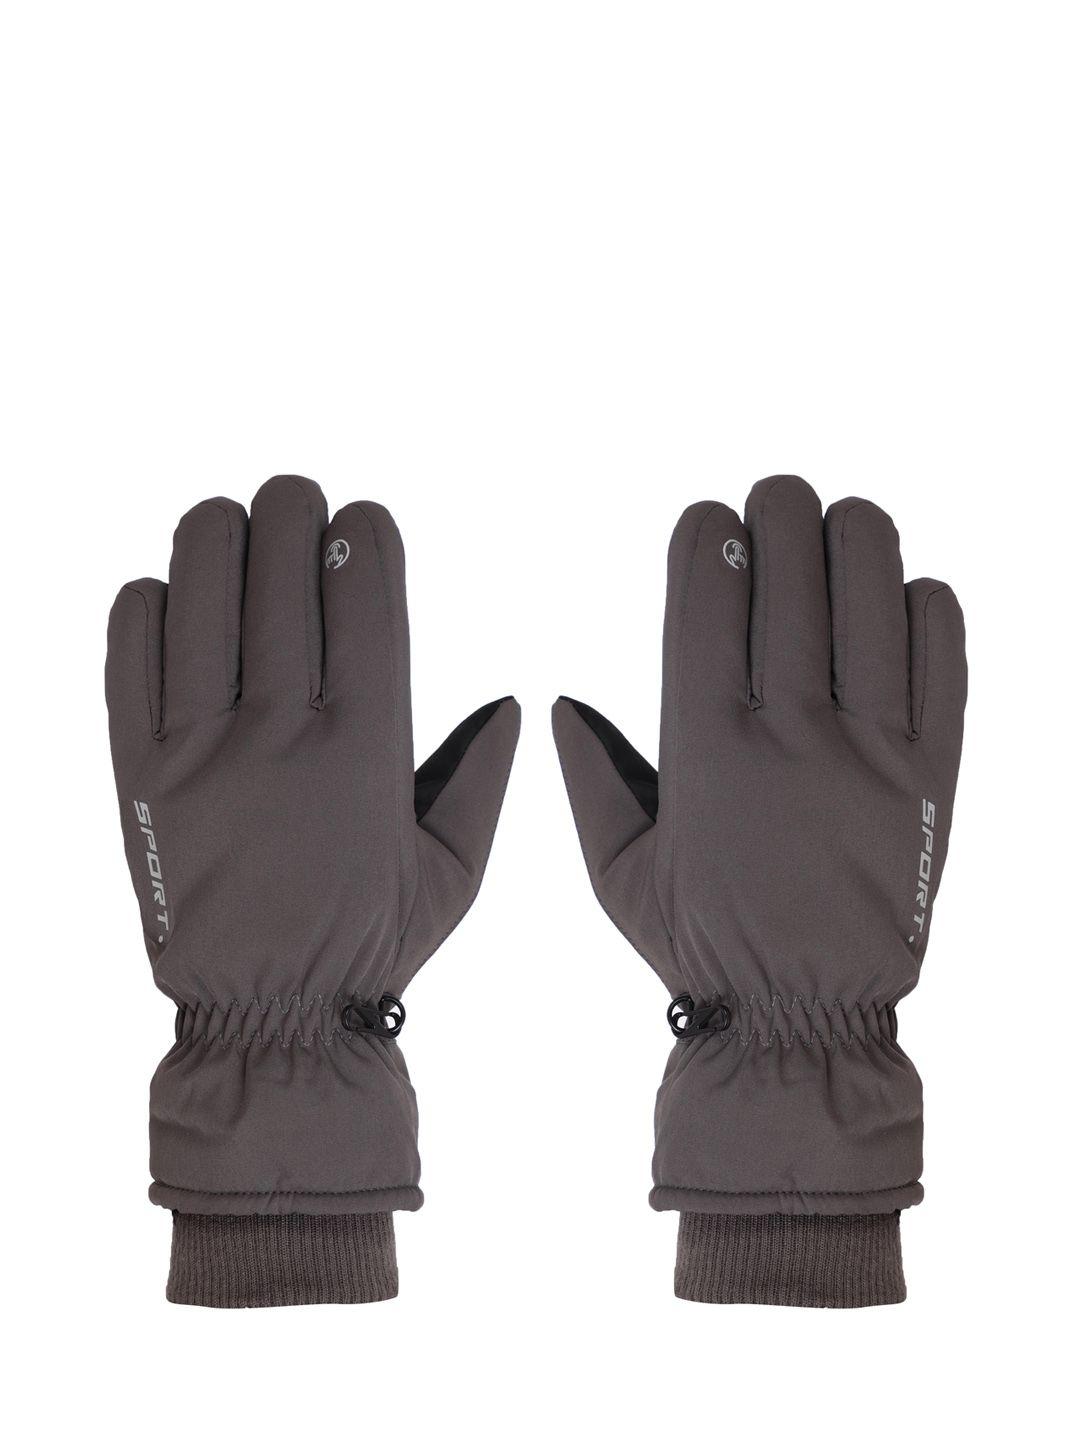 fabseasons-unisex-charcoal-grey-waterproof-winter-gloves